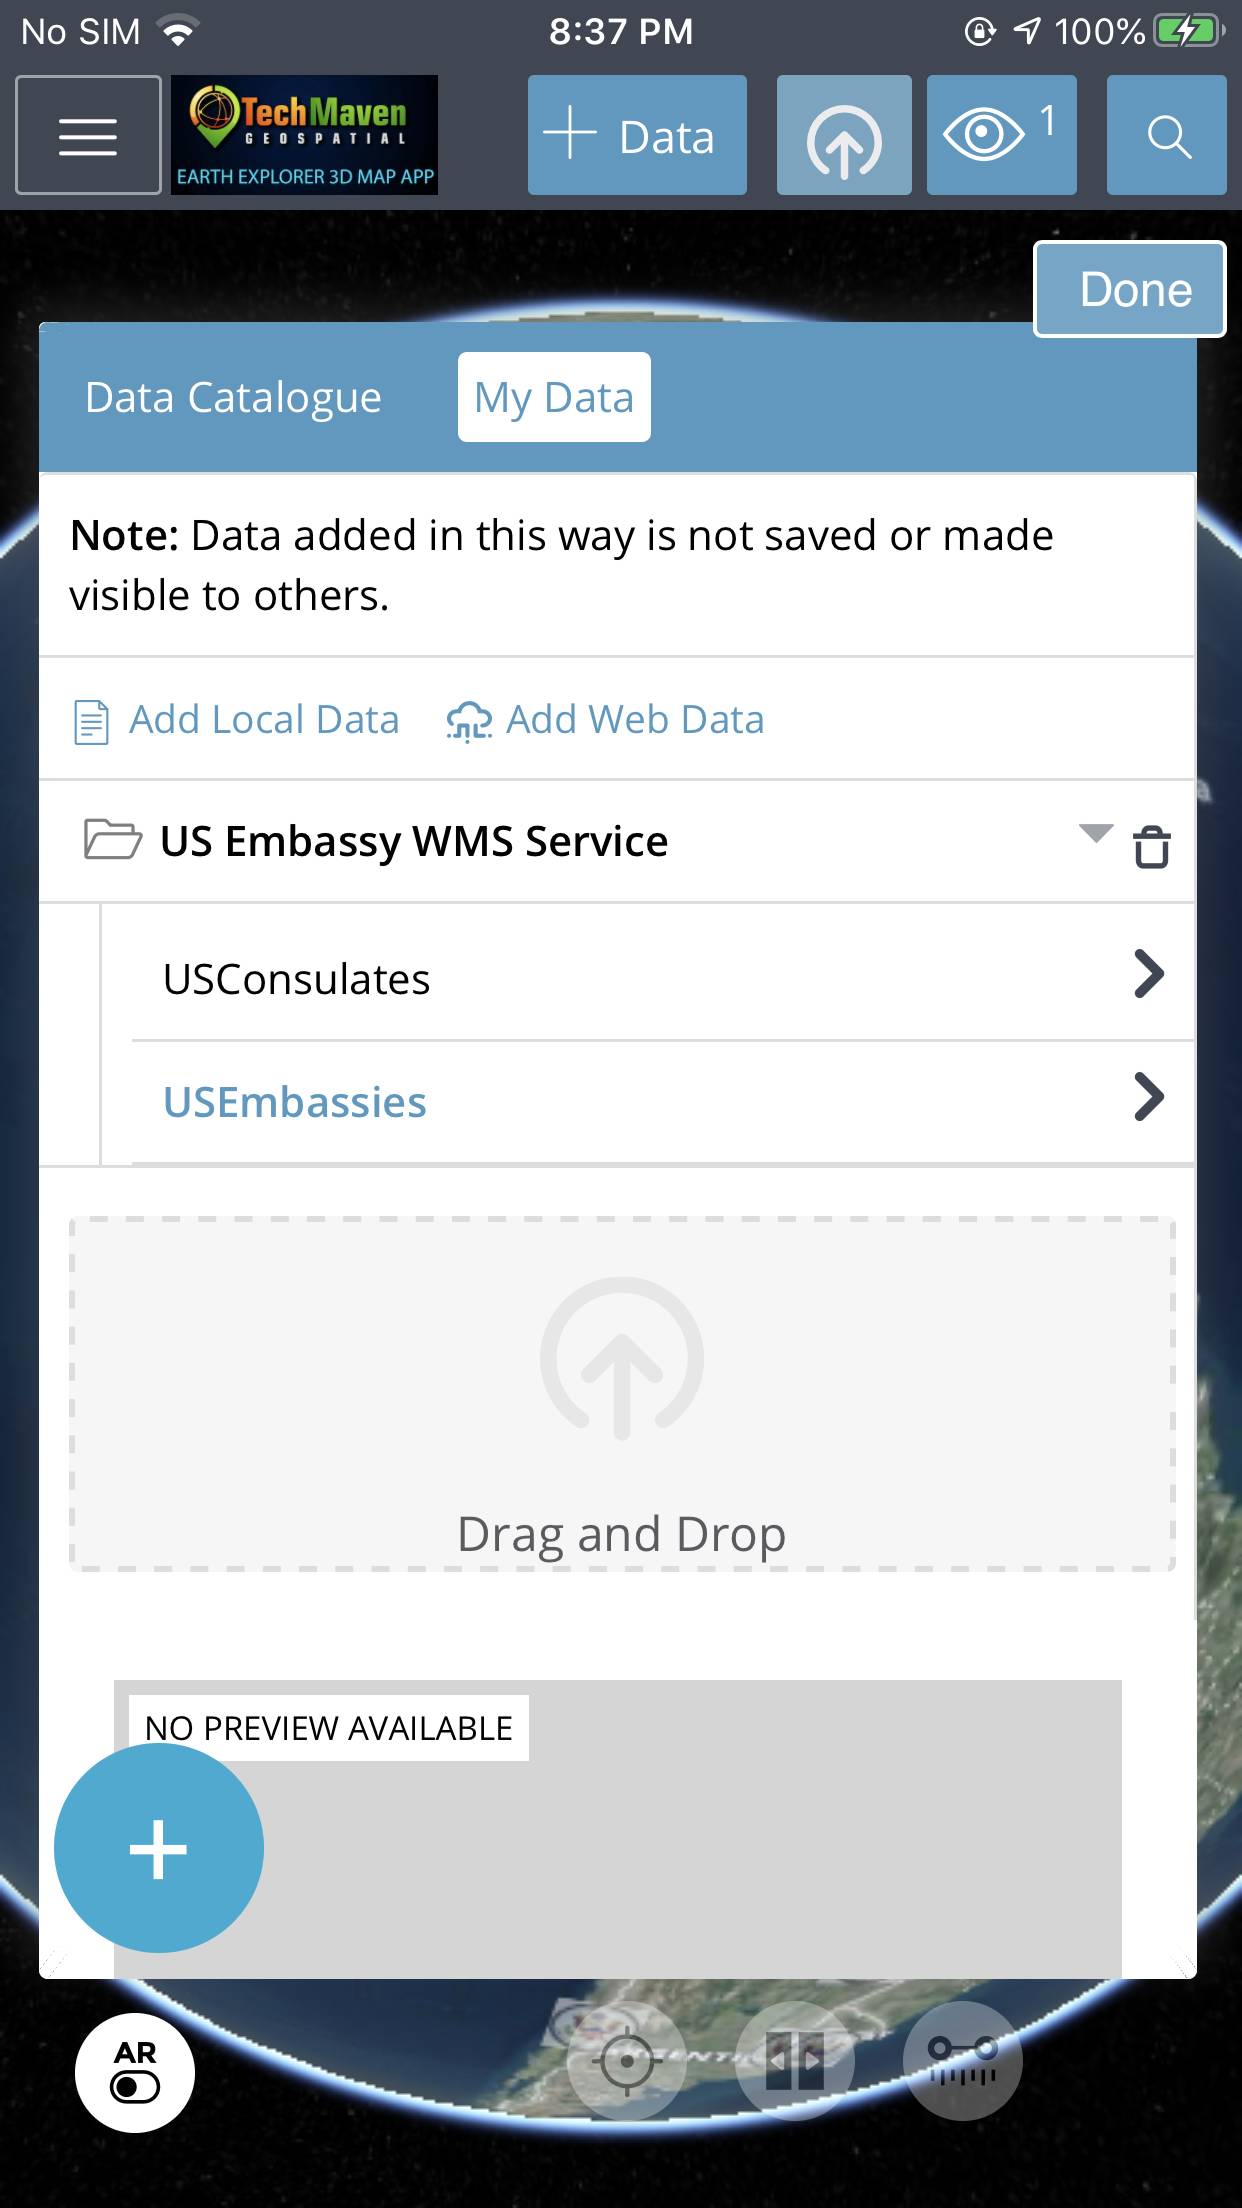 Web Map Service (WMS)